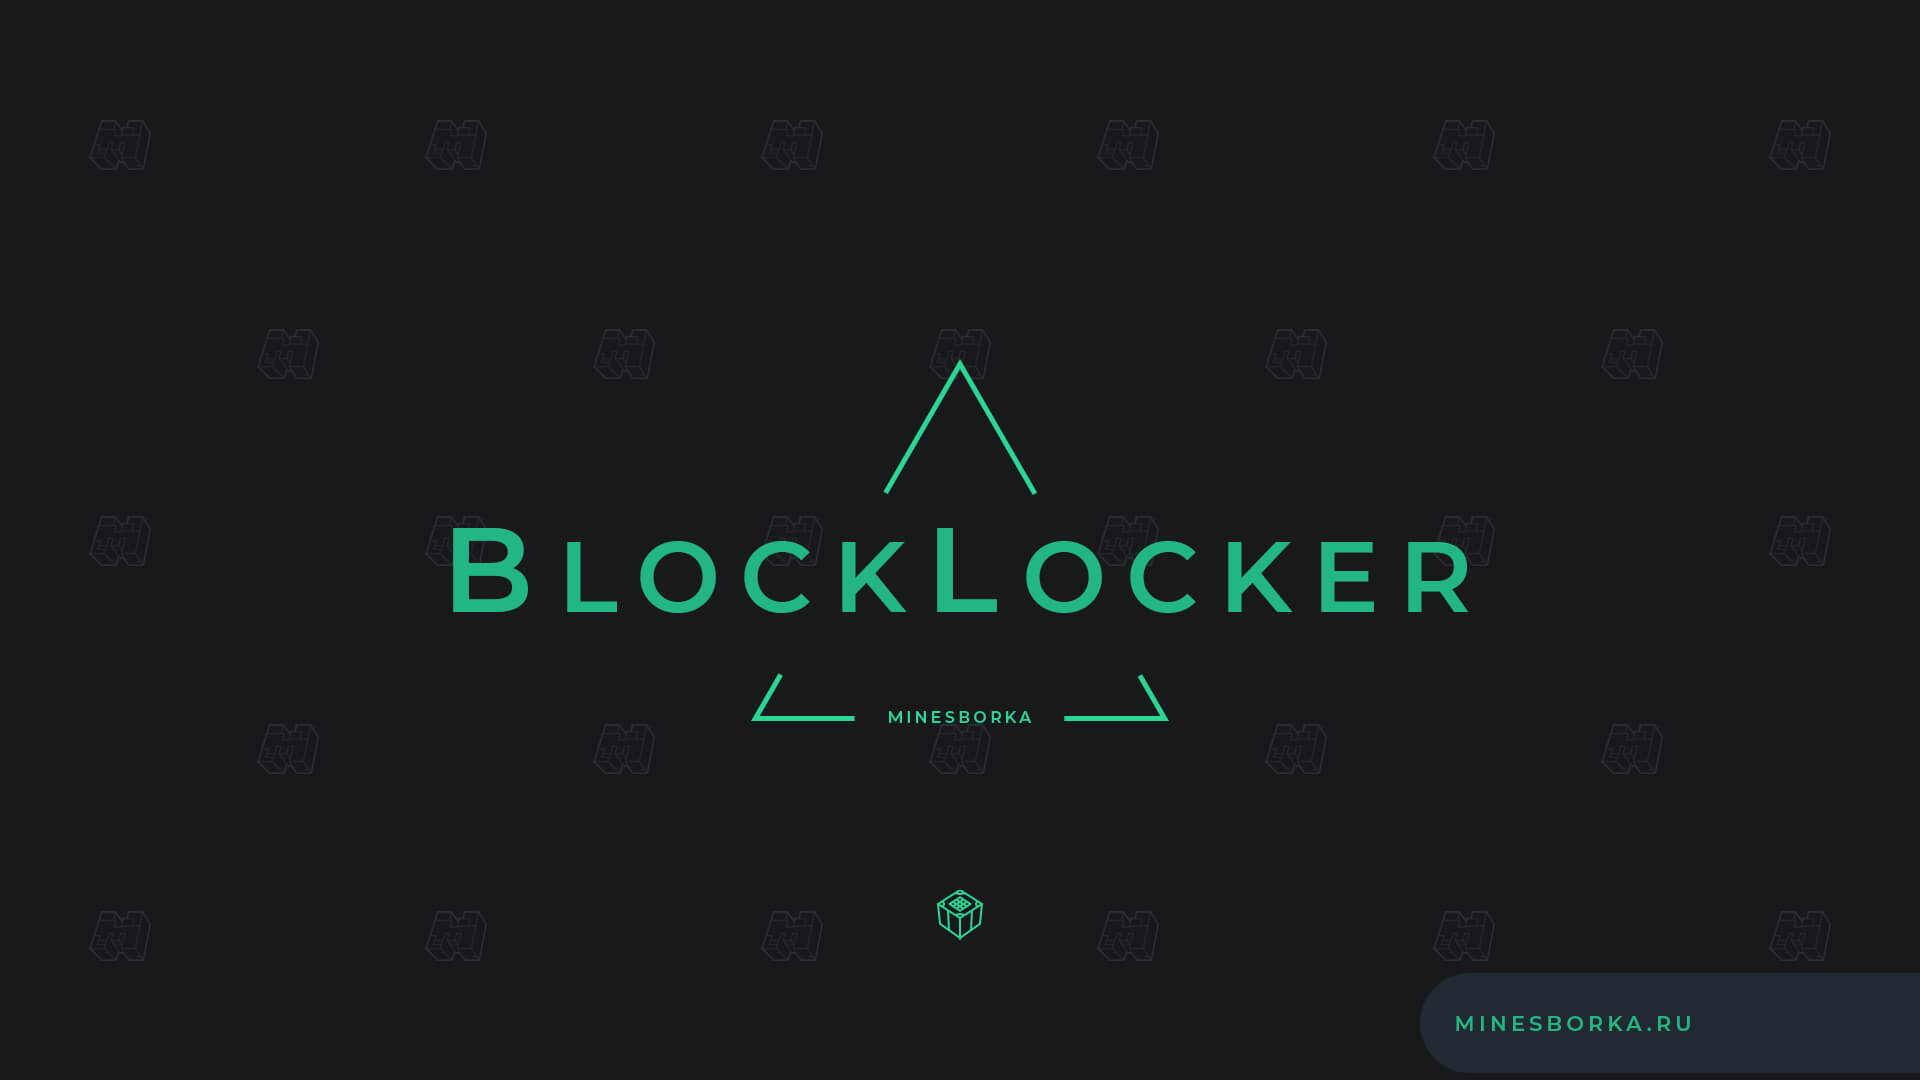 Скачать плагин BlockLocker | Защита сундуков, плагин для защиты сундуков на сервере Майнкрафт